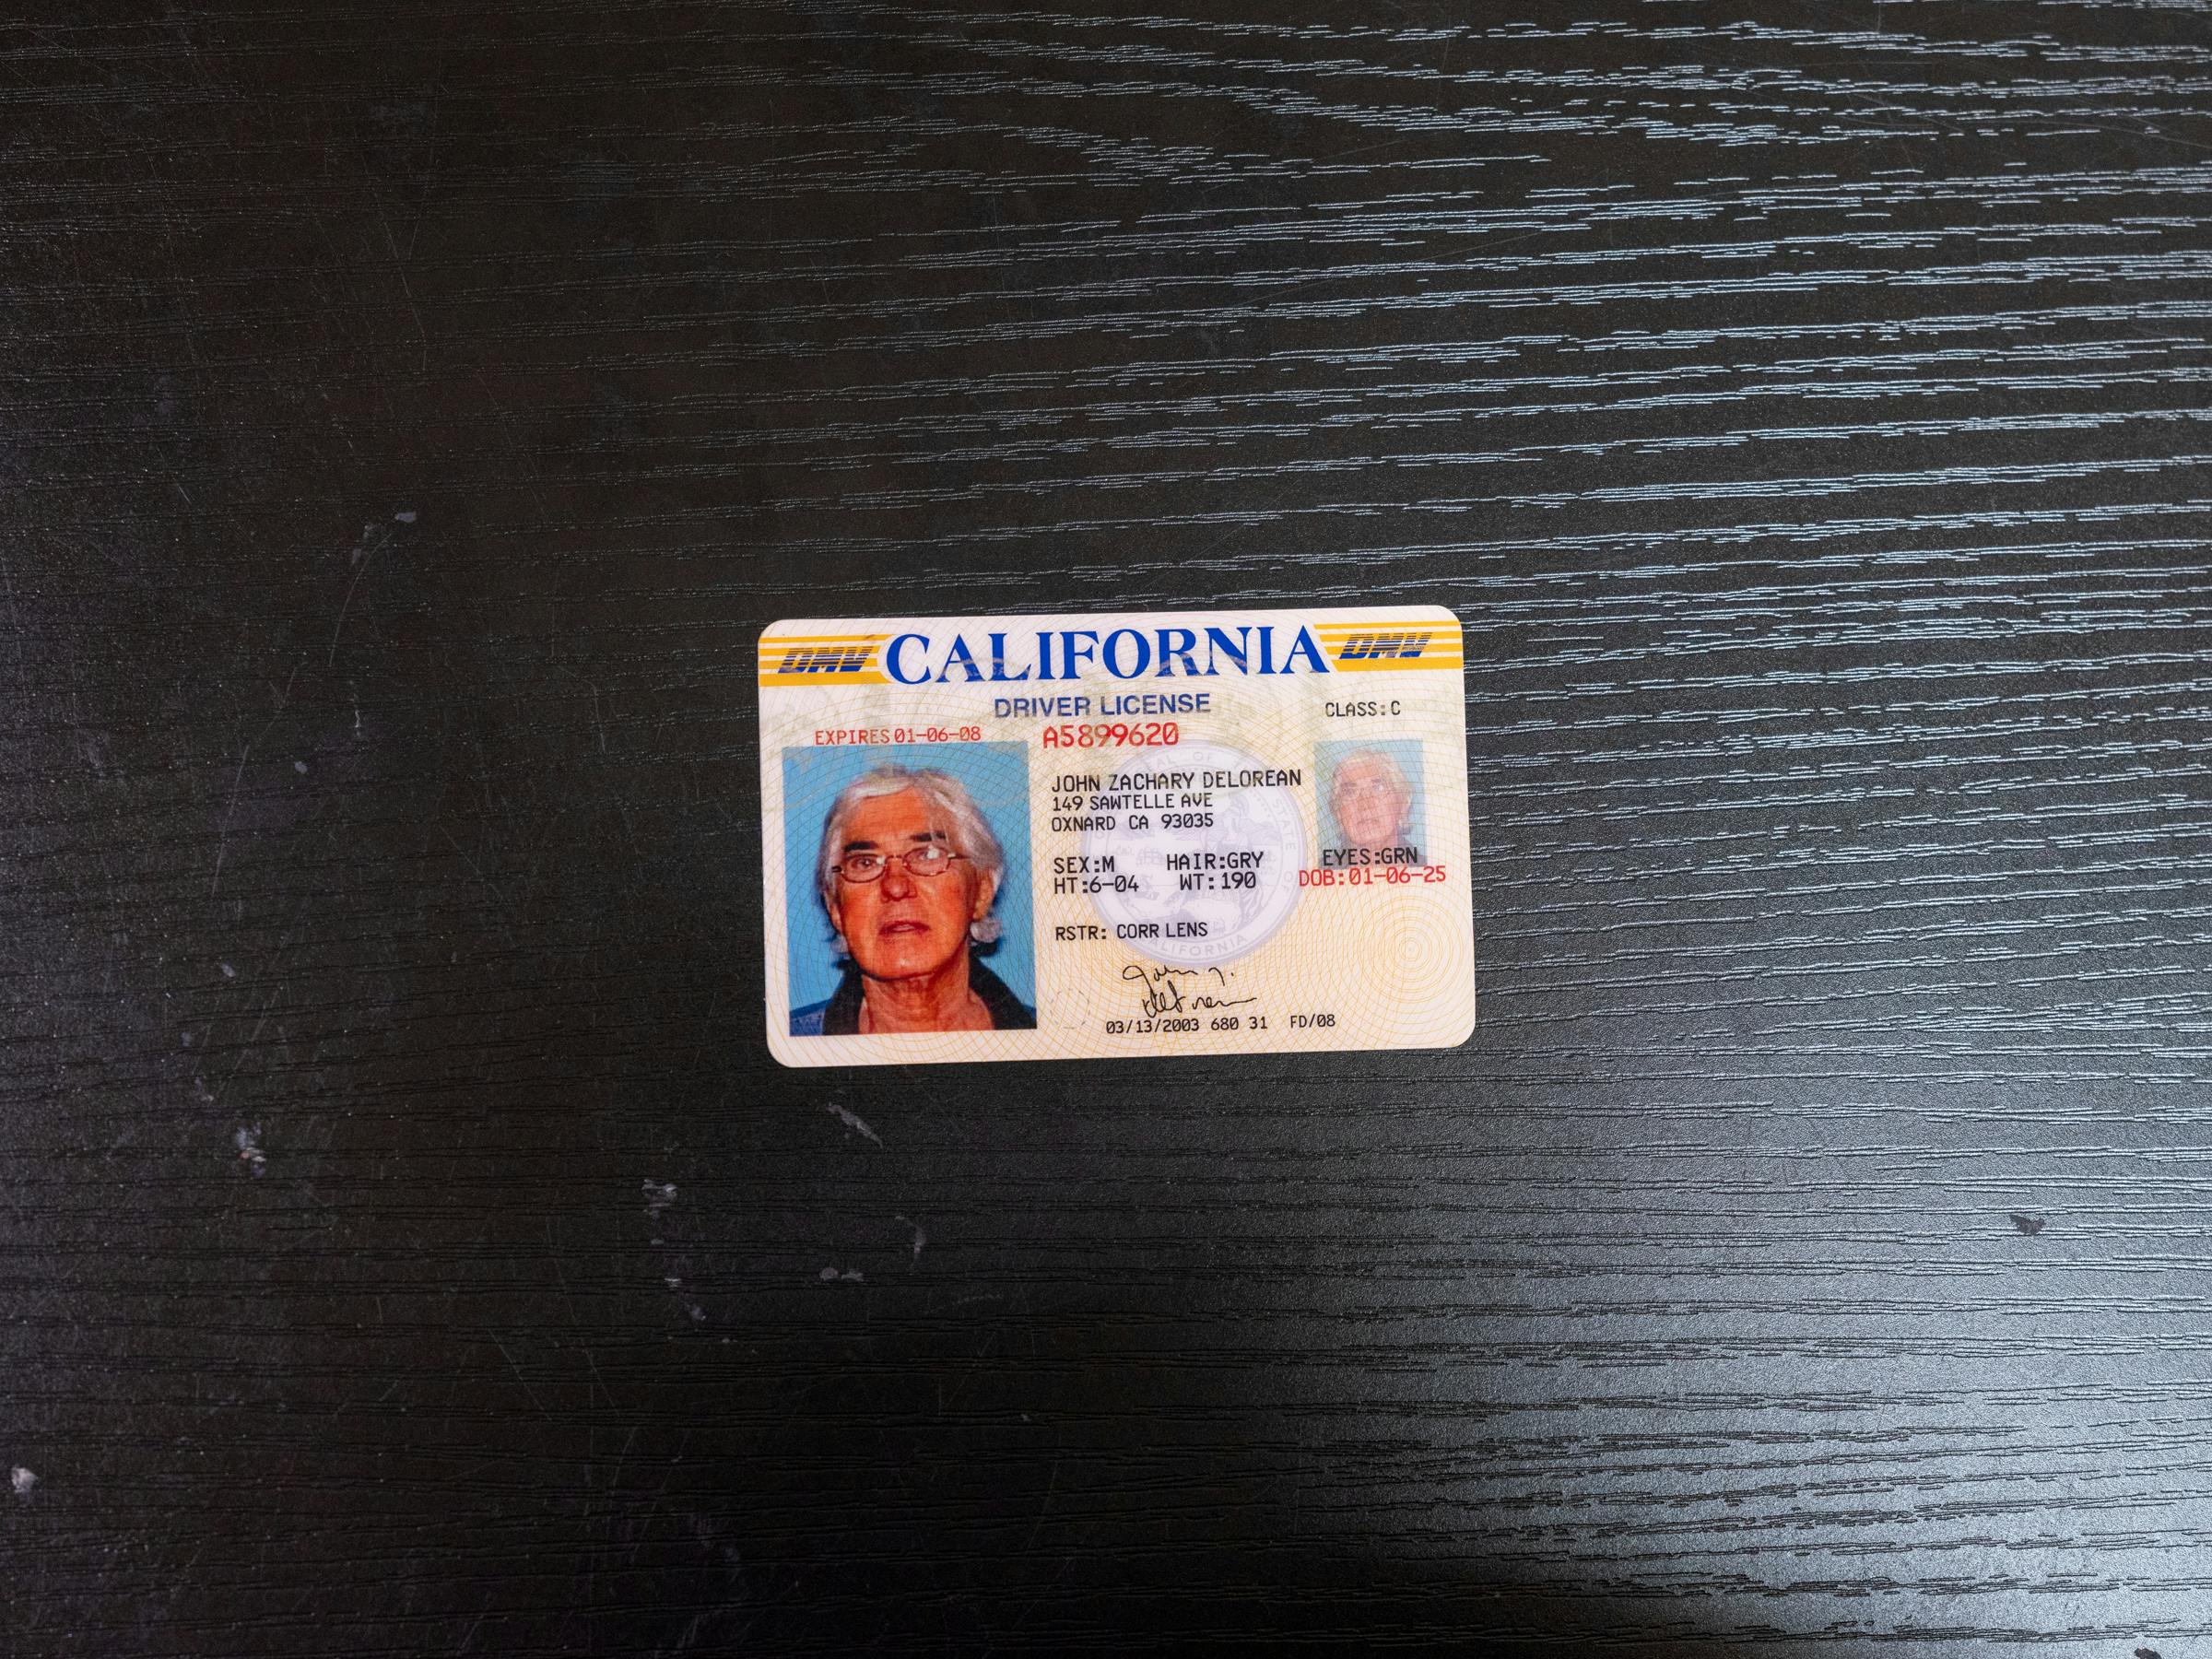 Kat DeLorean Father John DeLorean California driver's license